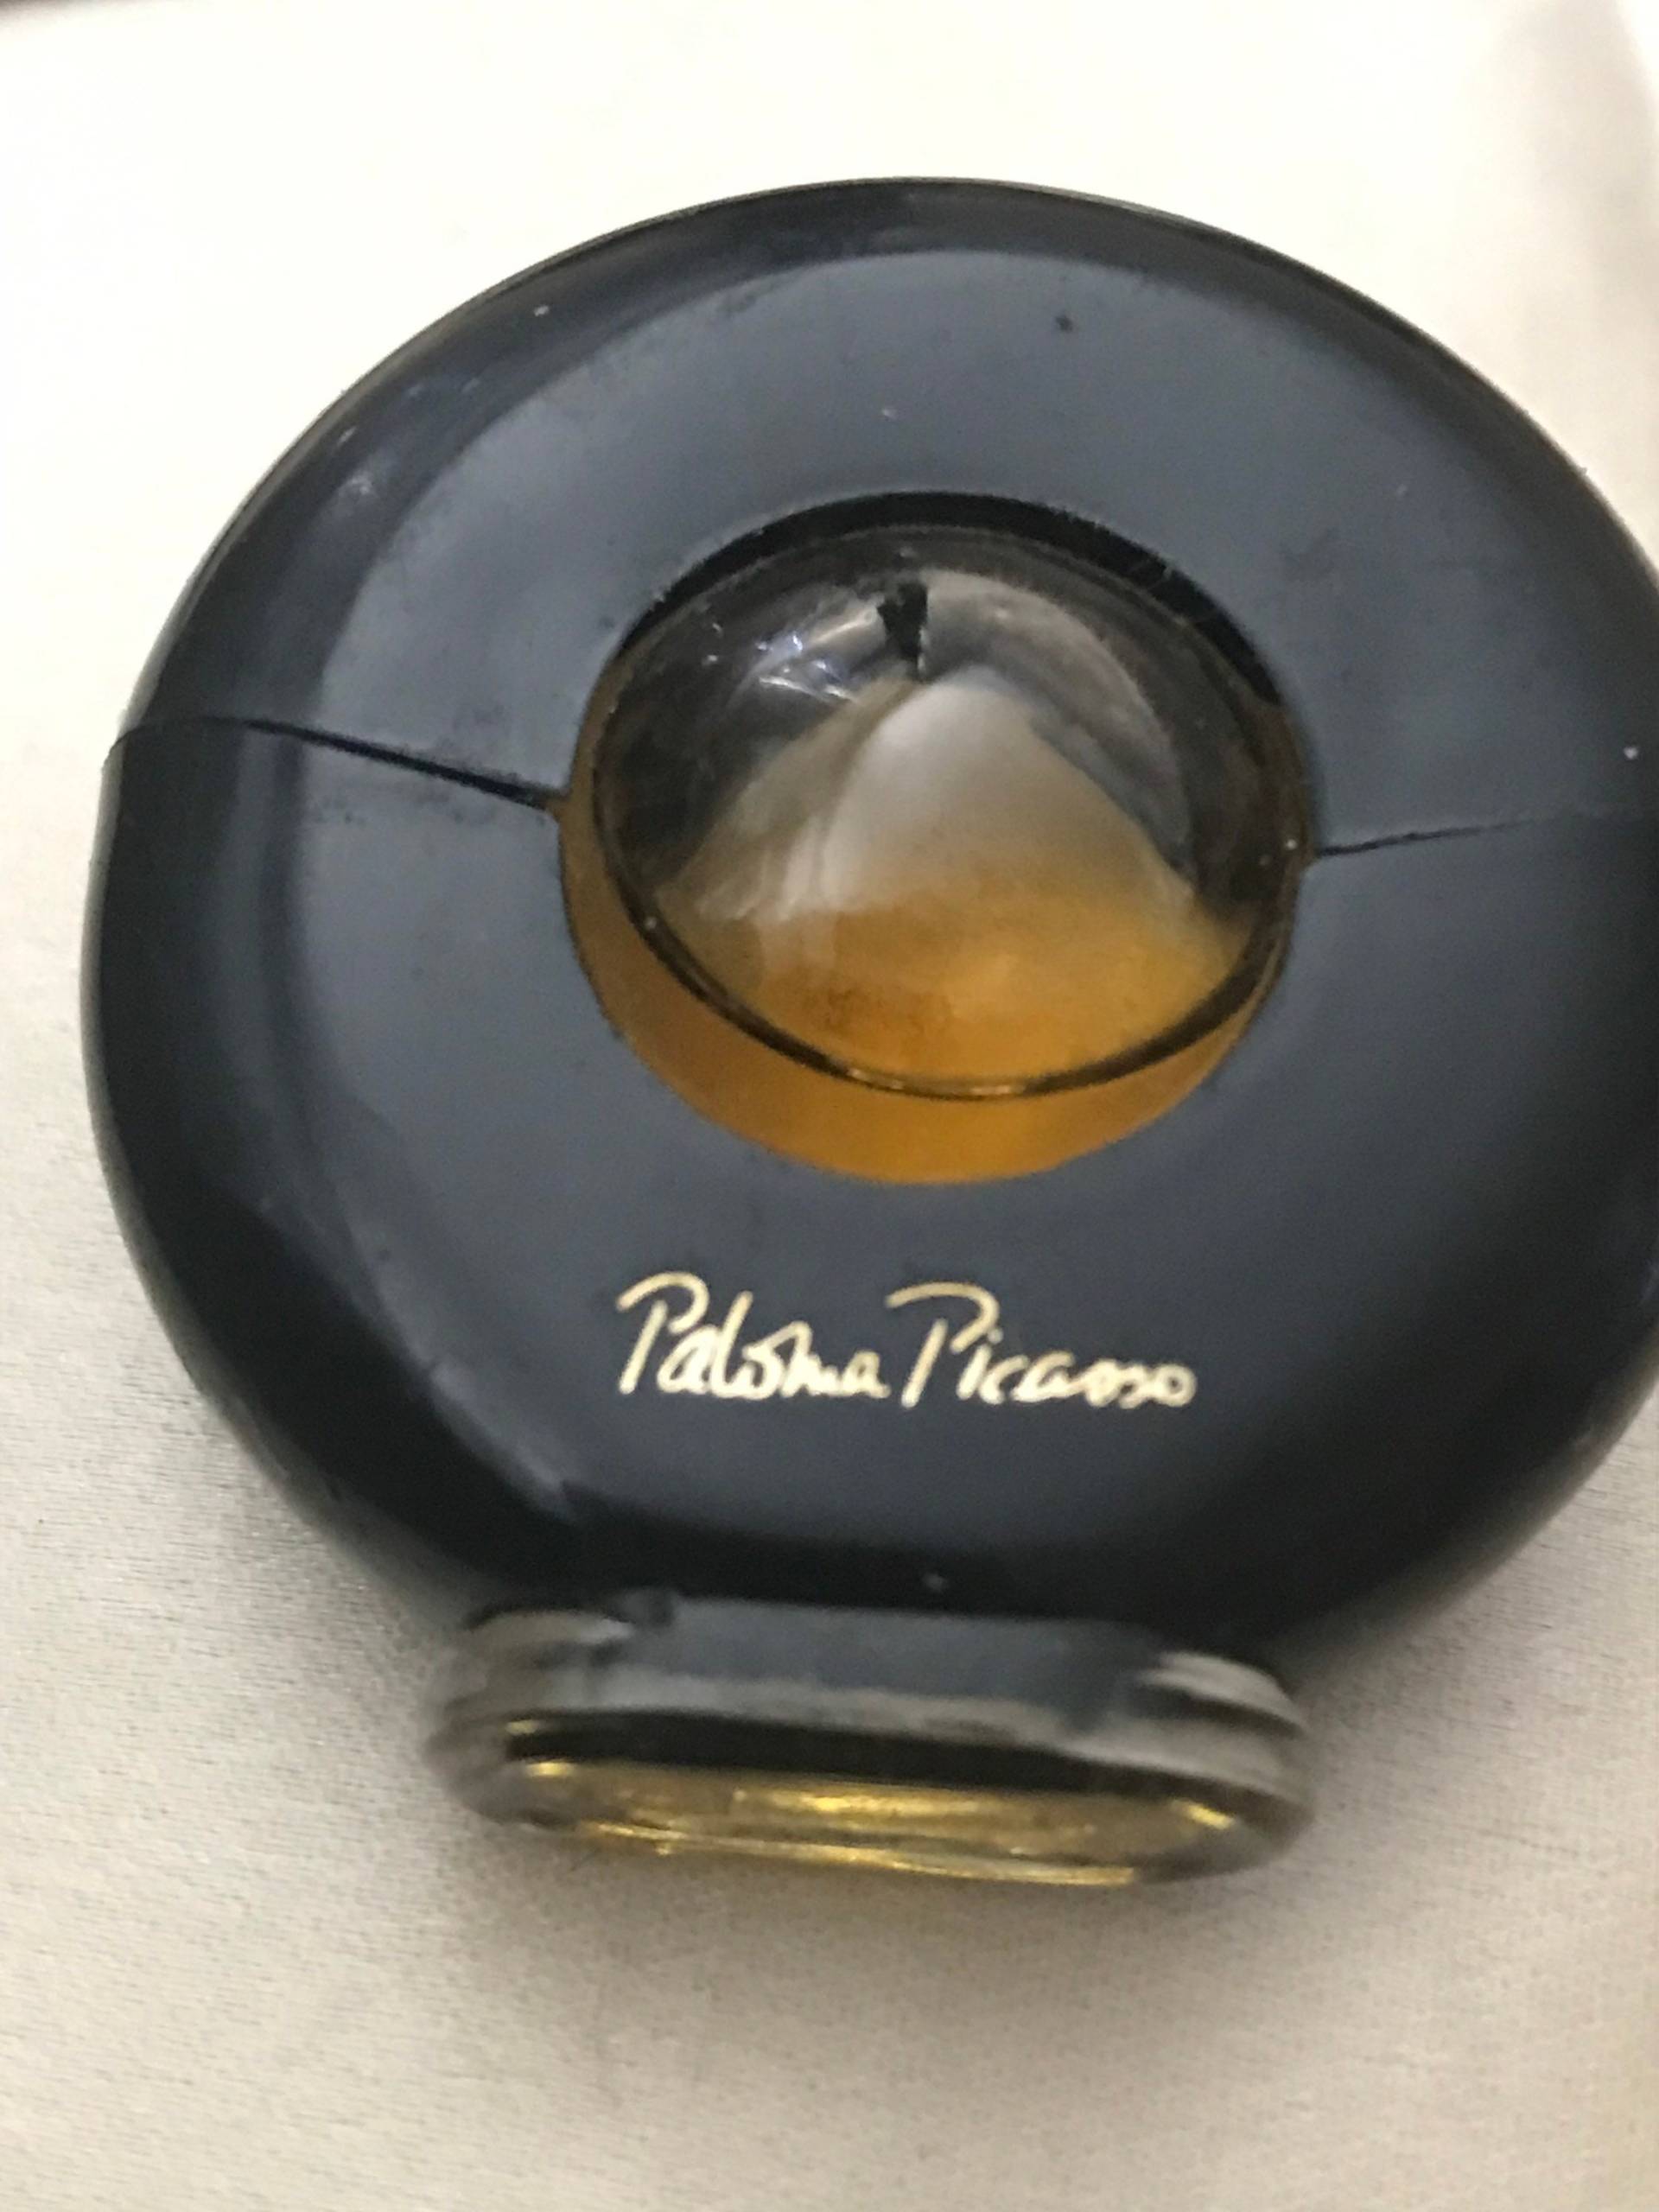 Paloma Picasso Miniaturparfum Designerparfum Sammlerstück von saltydogvintage